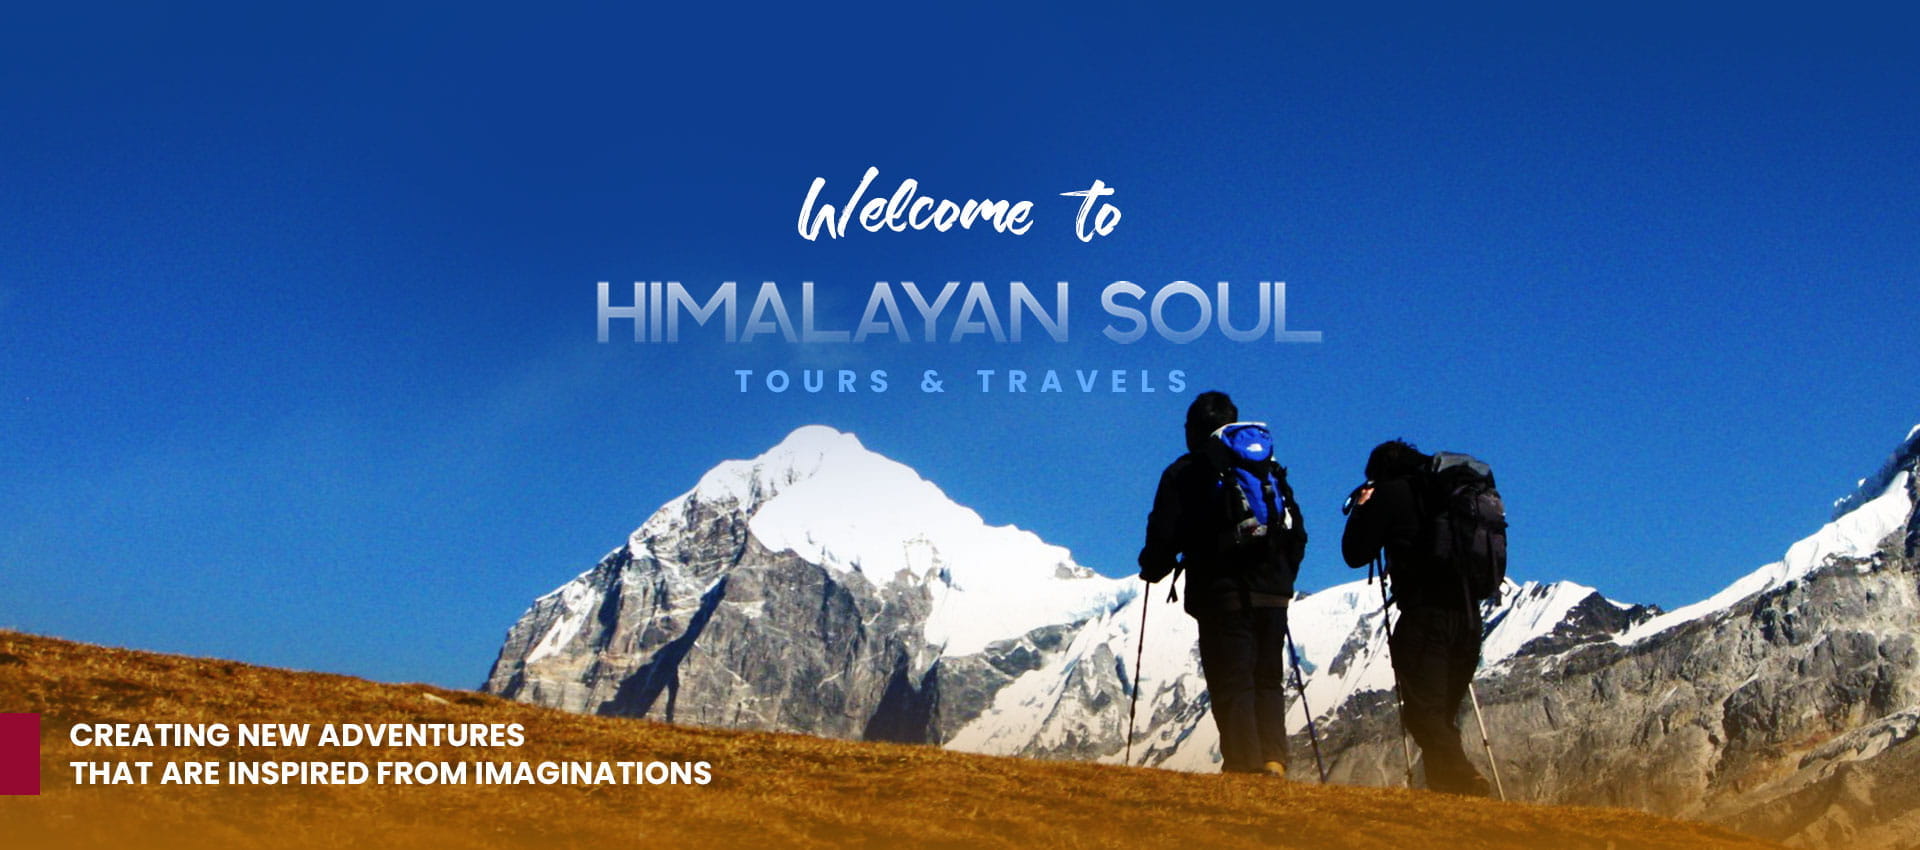 Himalayan Soul Tours and Travel